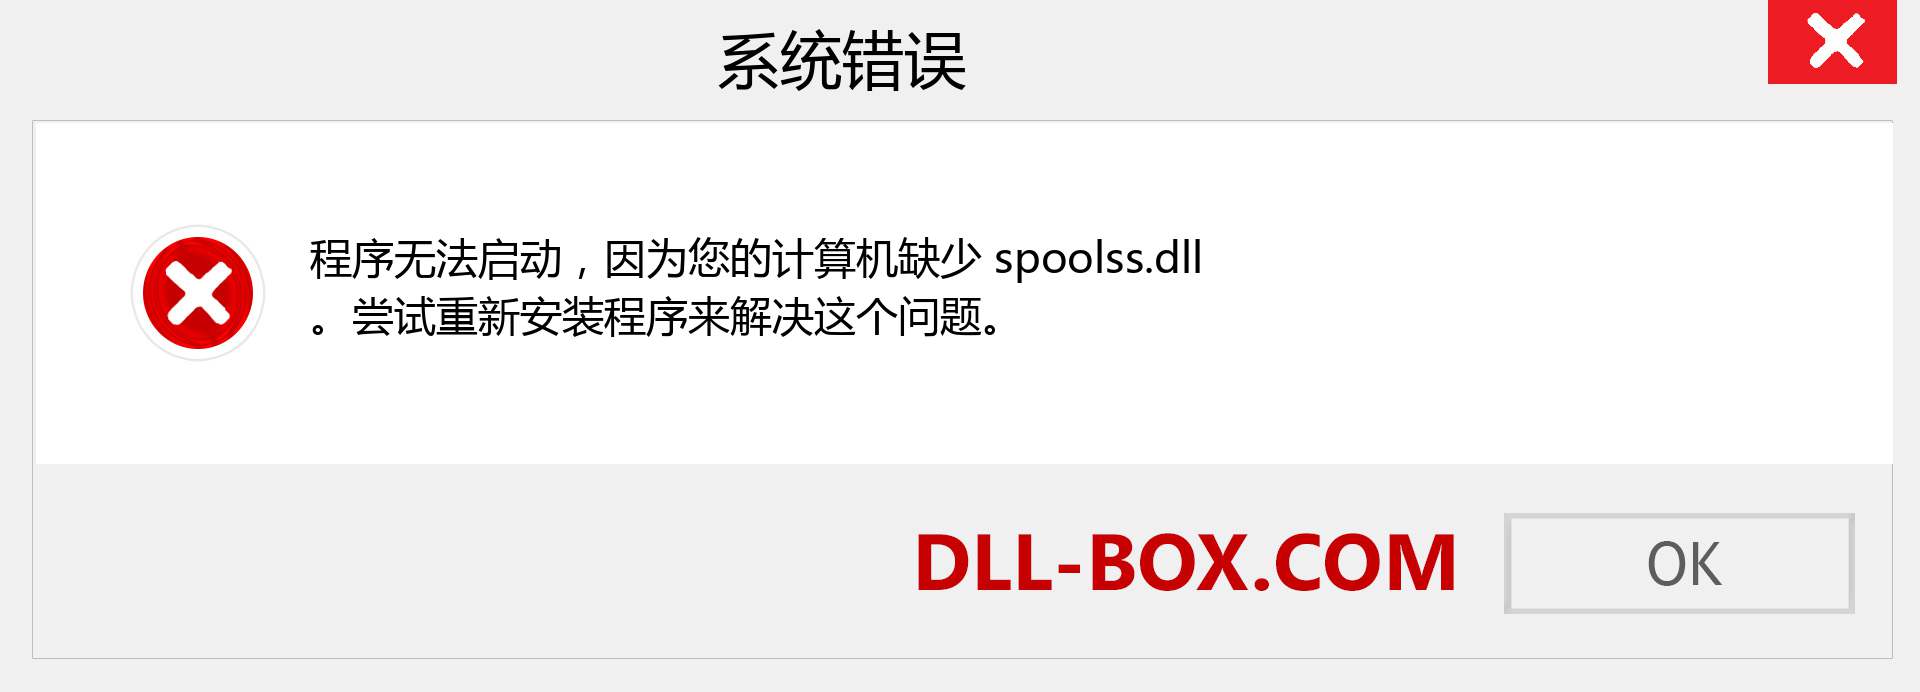 spoolss.dll 文件丢失？。 适用于 Windows 7、8、10 的下载 - 修复 Windows、照片、图像上的 spoolss dll 丢失错误